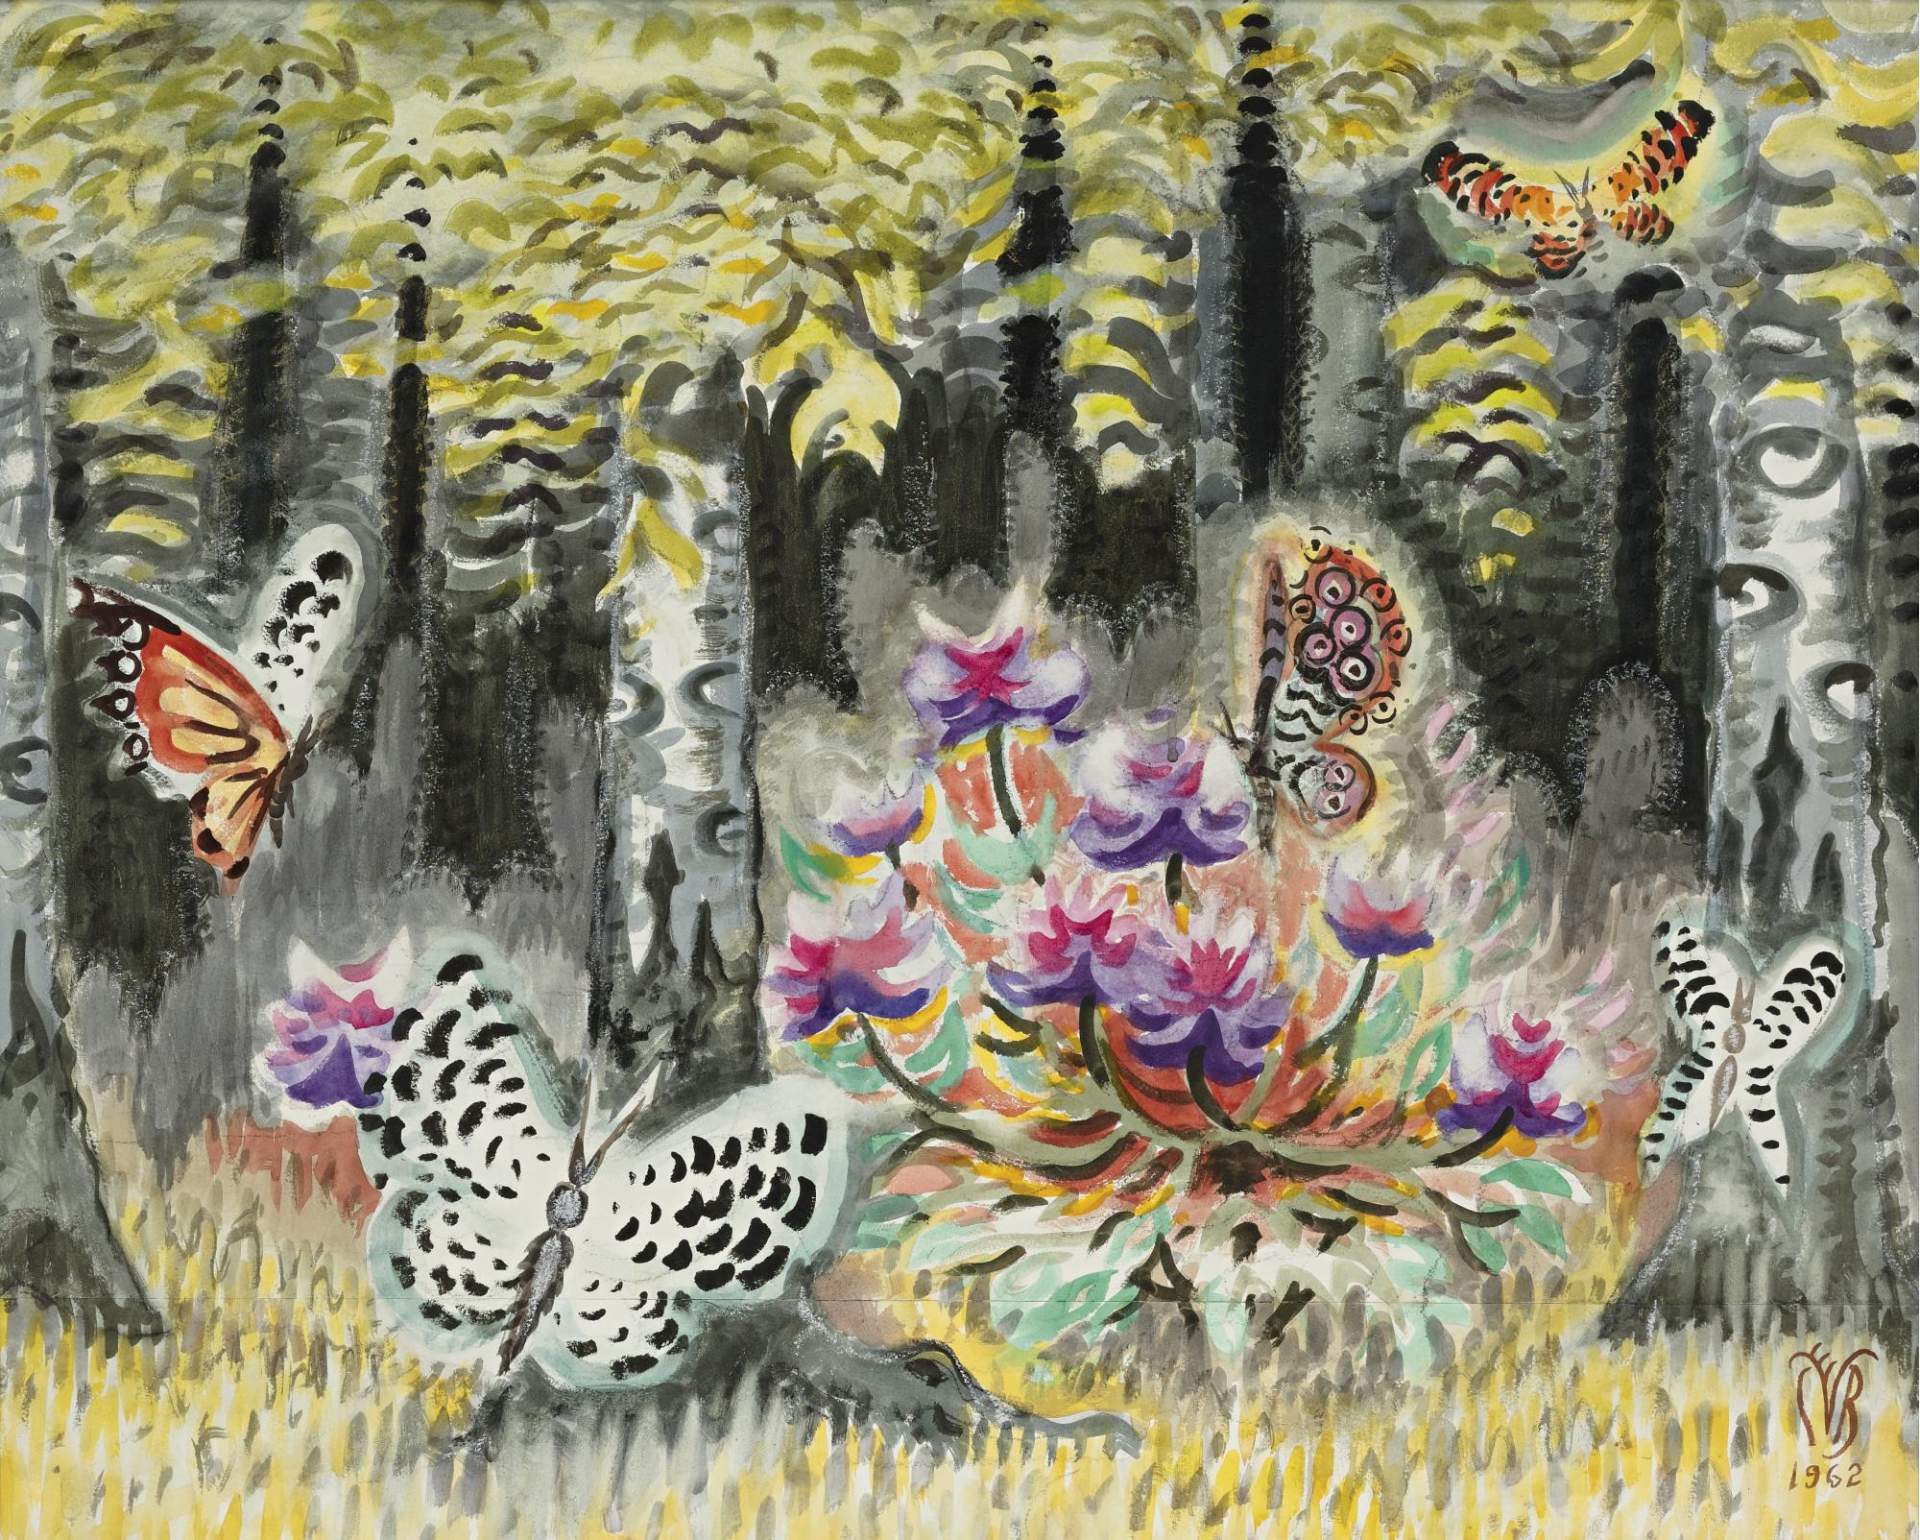 A Dream of Butterflies